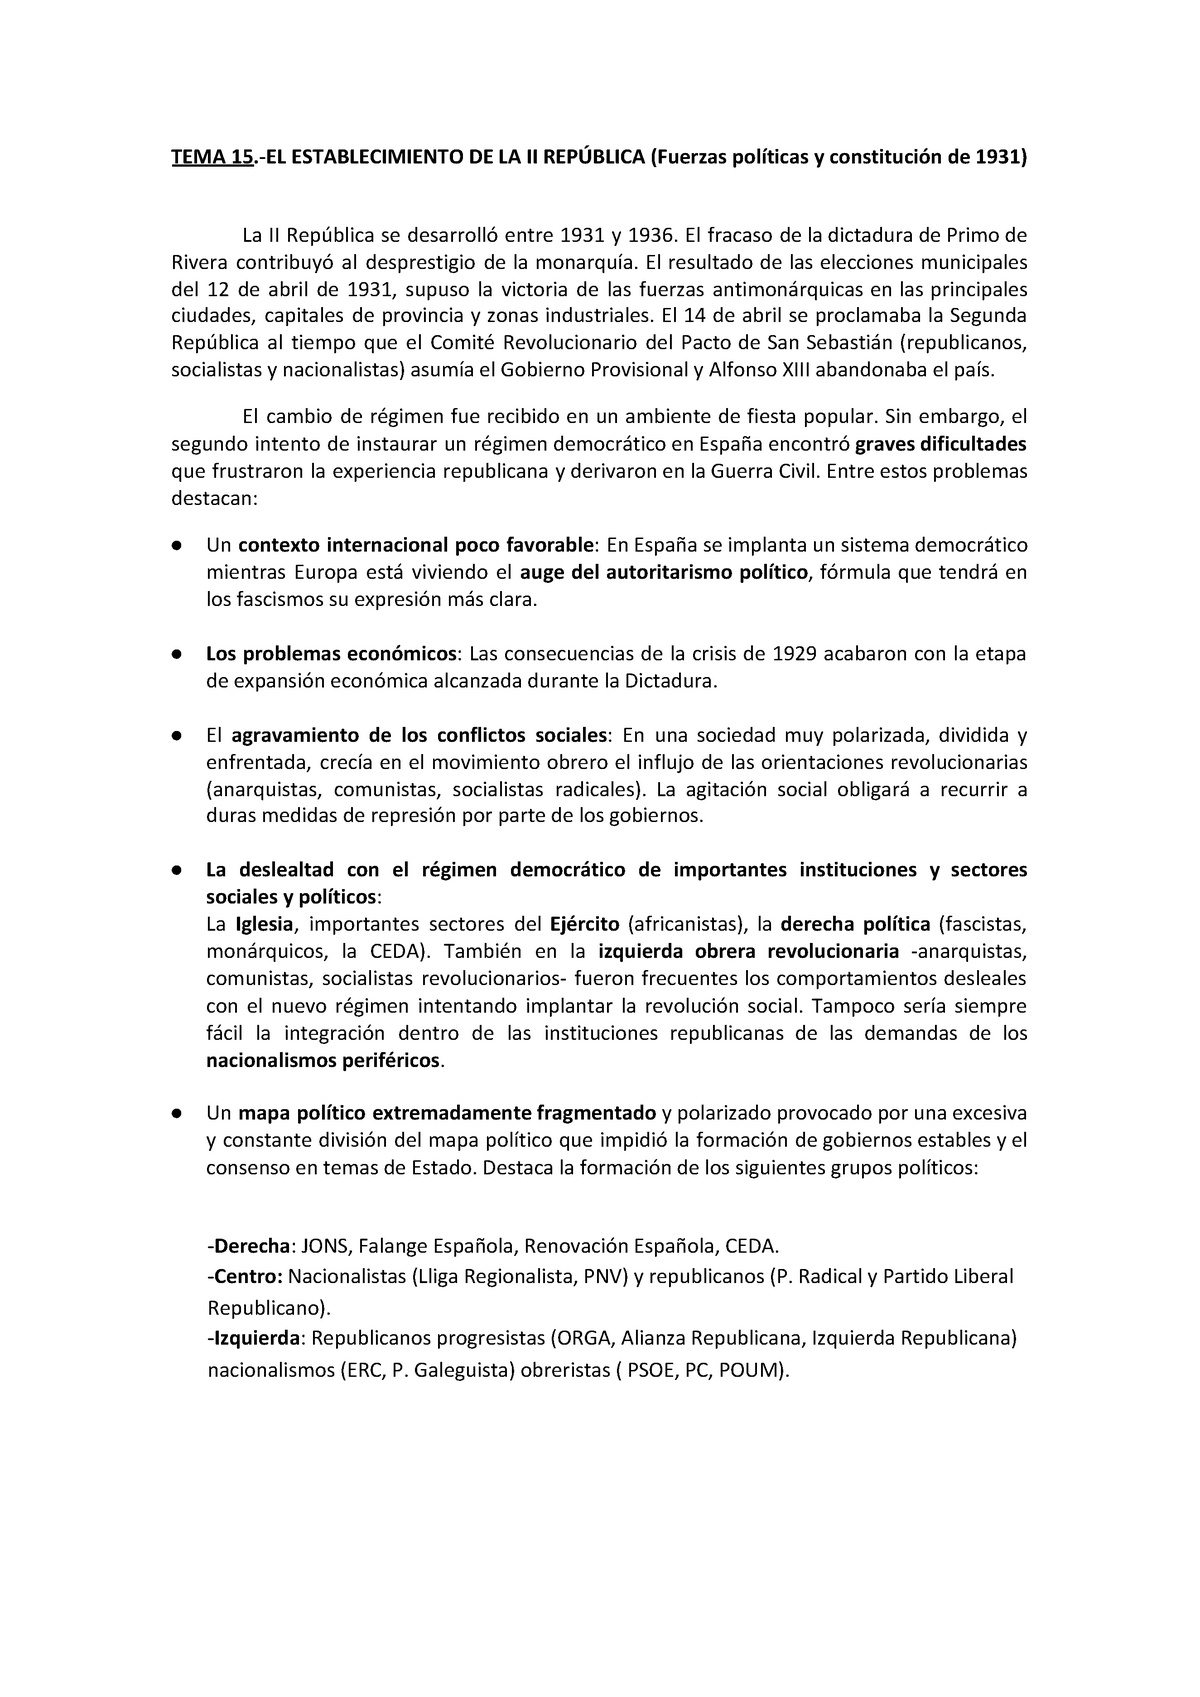 15.-EL Establecimiento DE LA II República - TEMA 15 .-EL ...